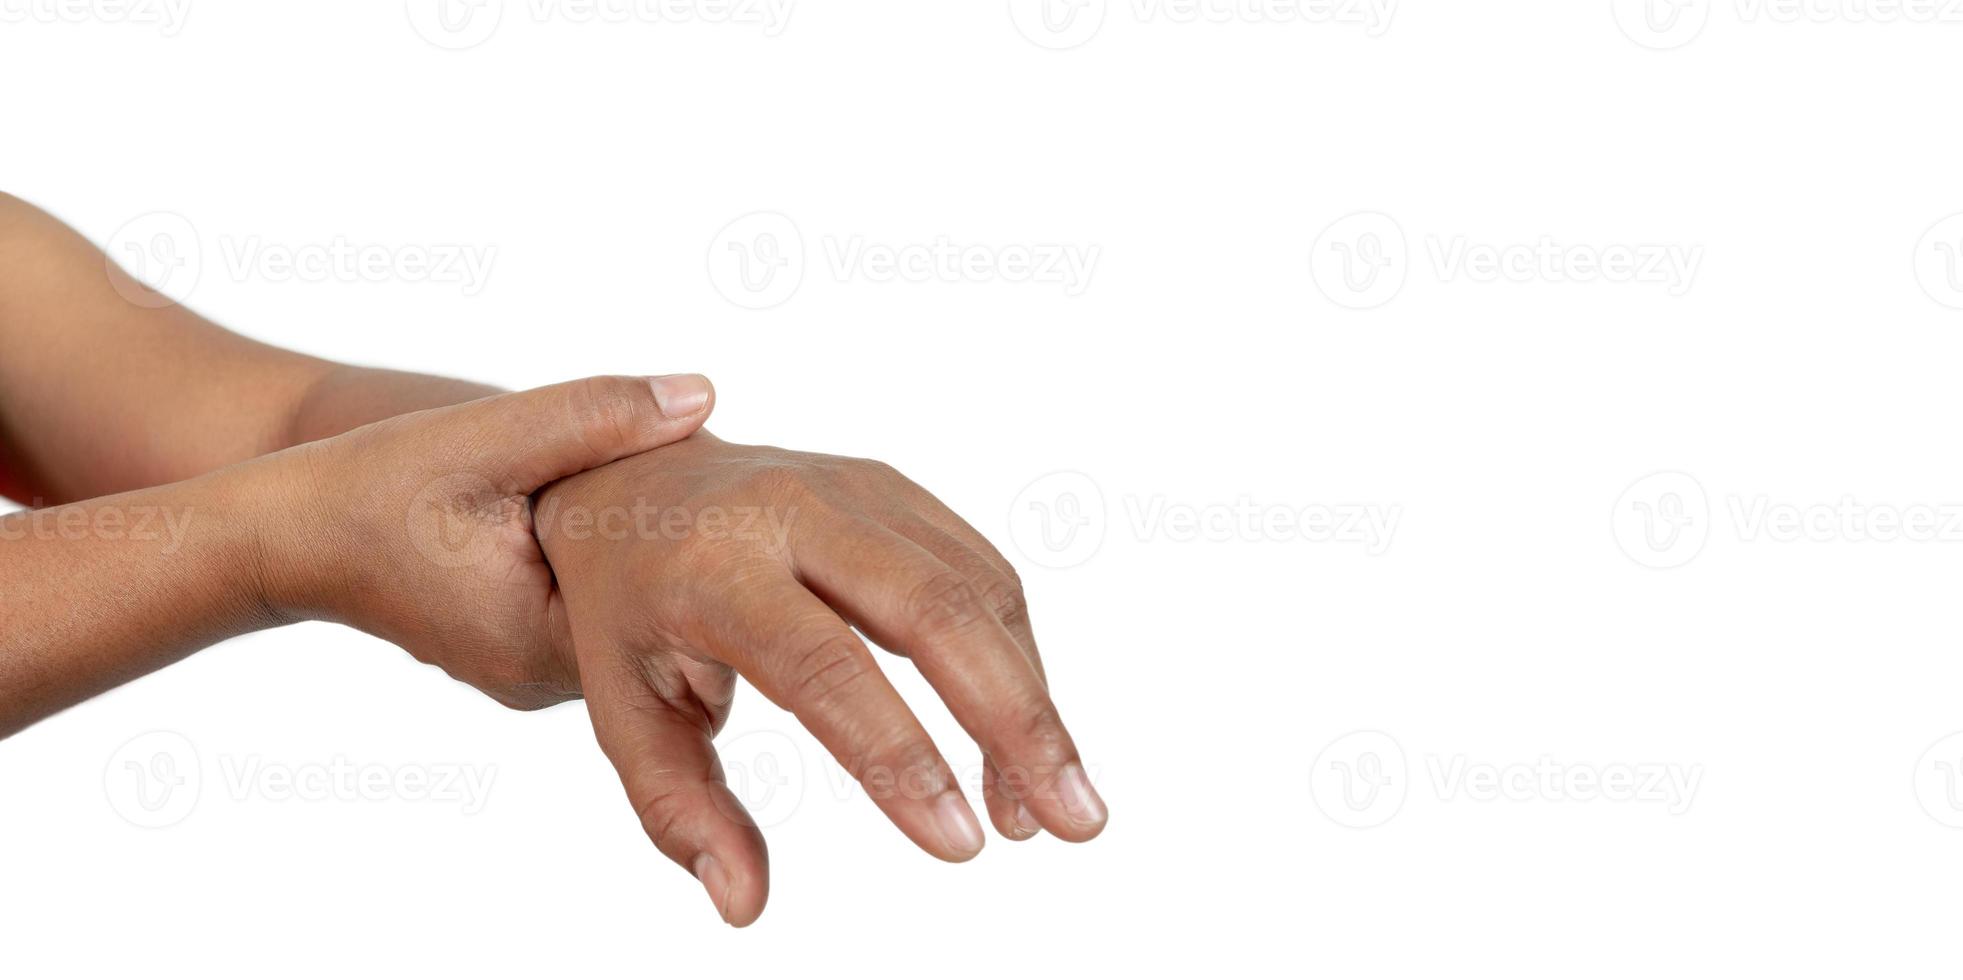 la mano de una persona con dolor de muñeca en un fondo blanco, el concepto de enfermedad por trabajar duro. foto